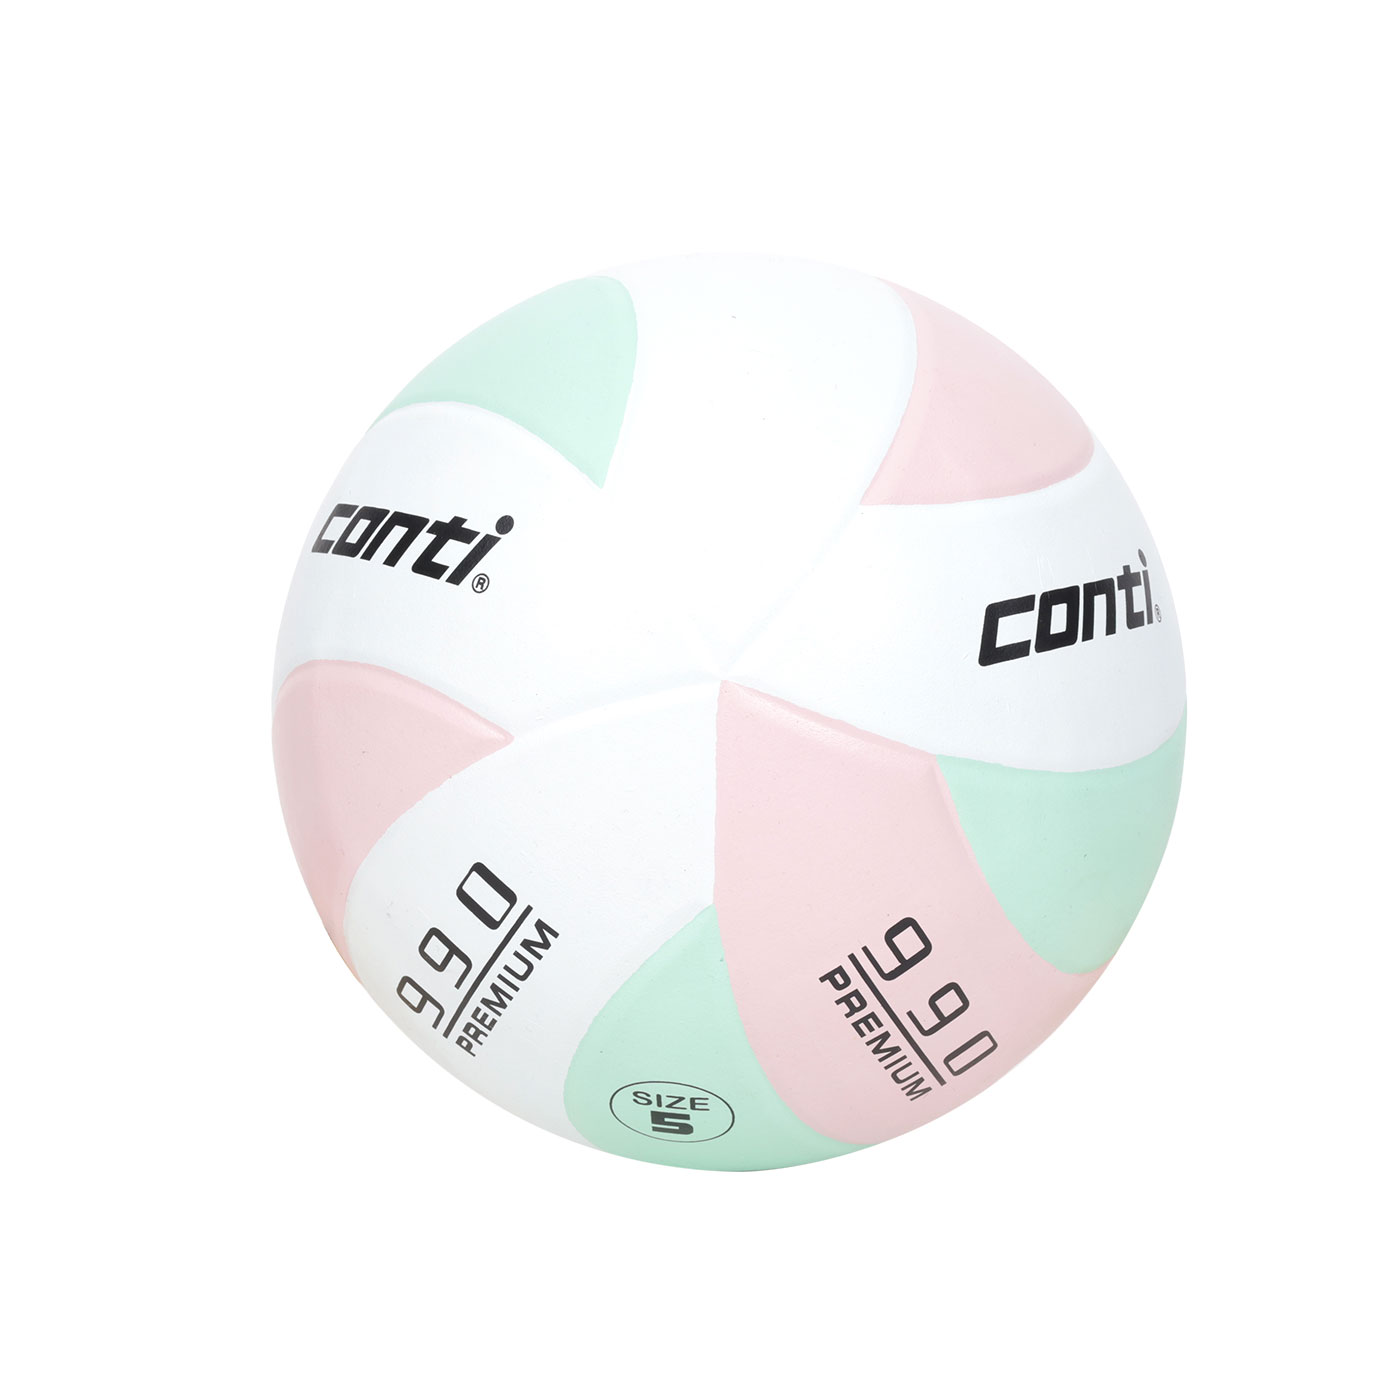 詠冠conti 5號頂級超世代橡膠排球 CONTI V990-5-WLPG - 淺綠淺粉白